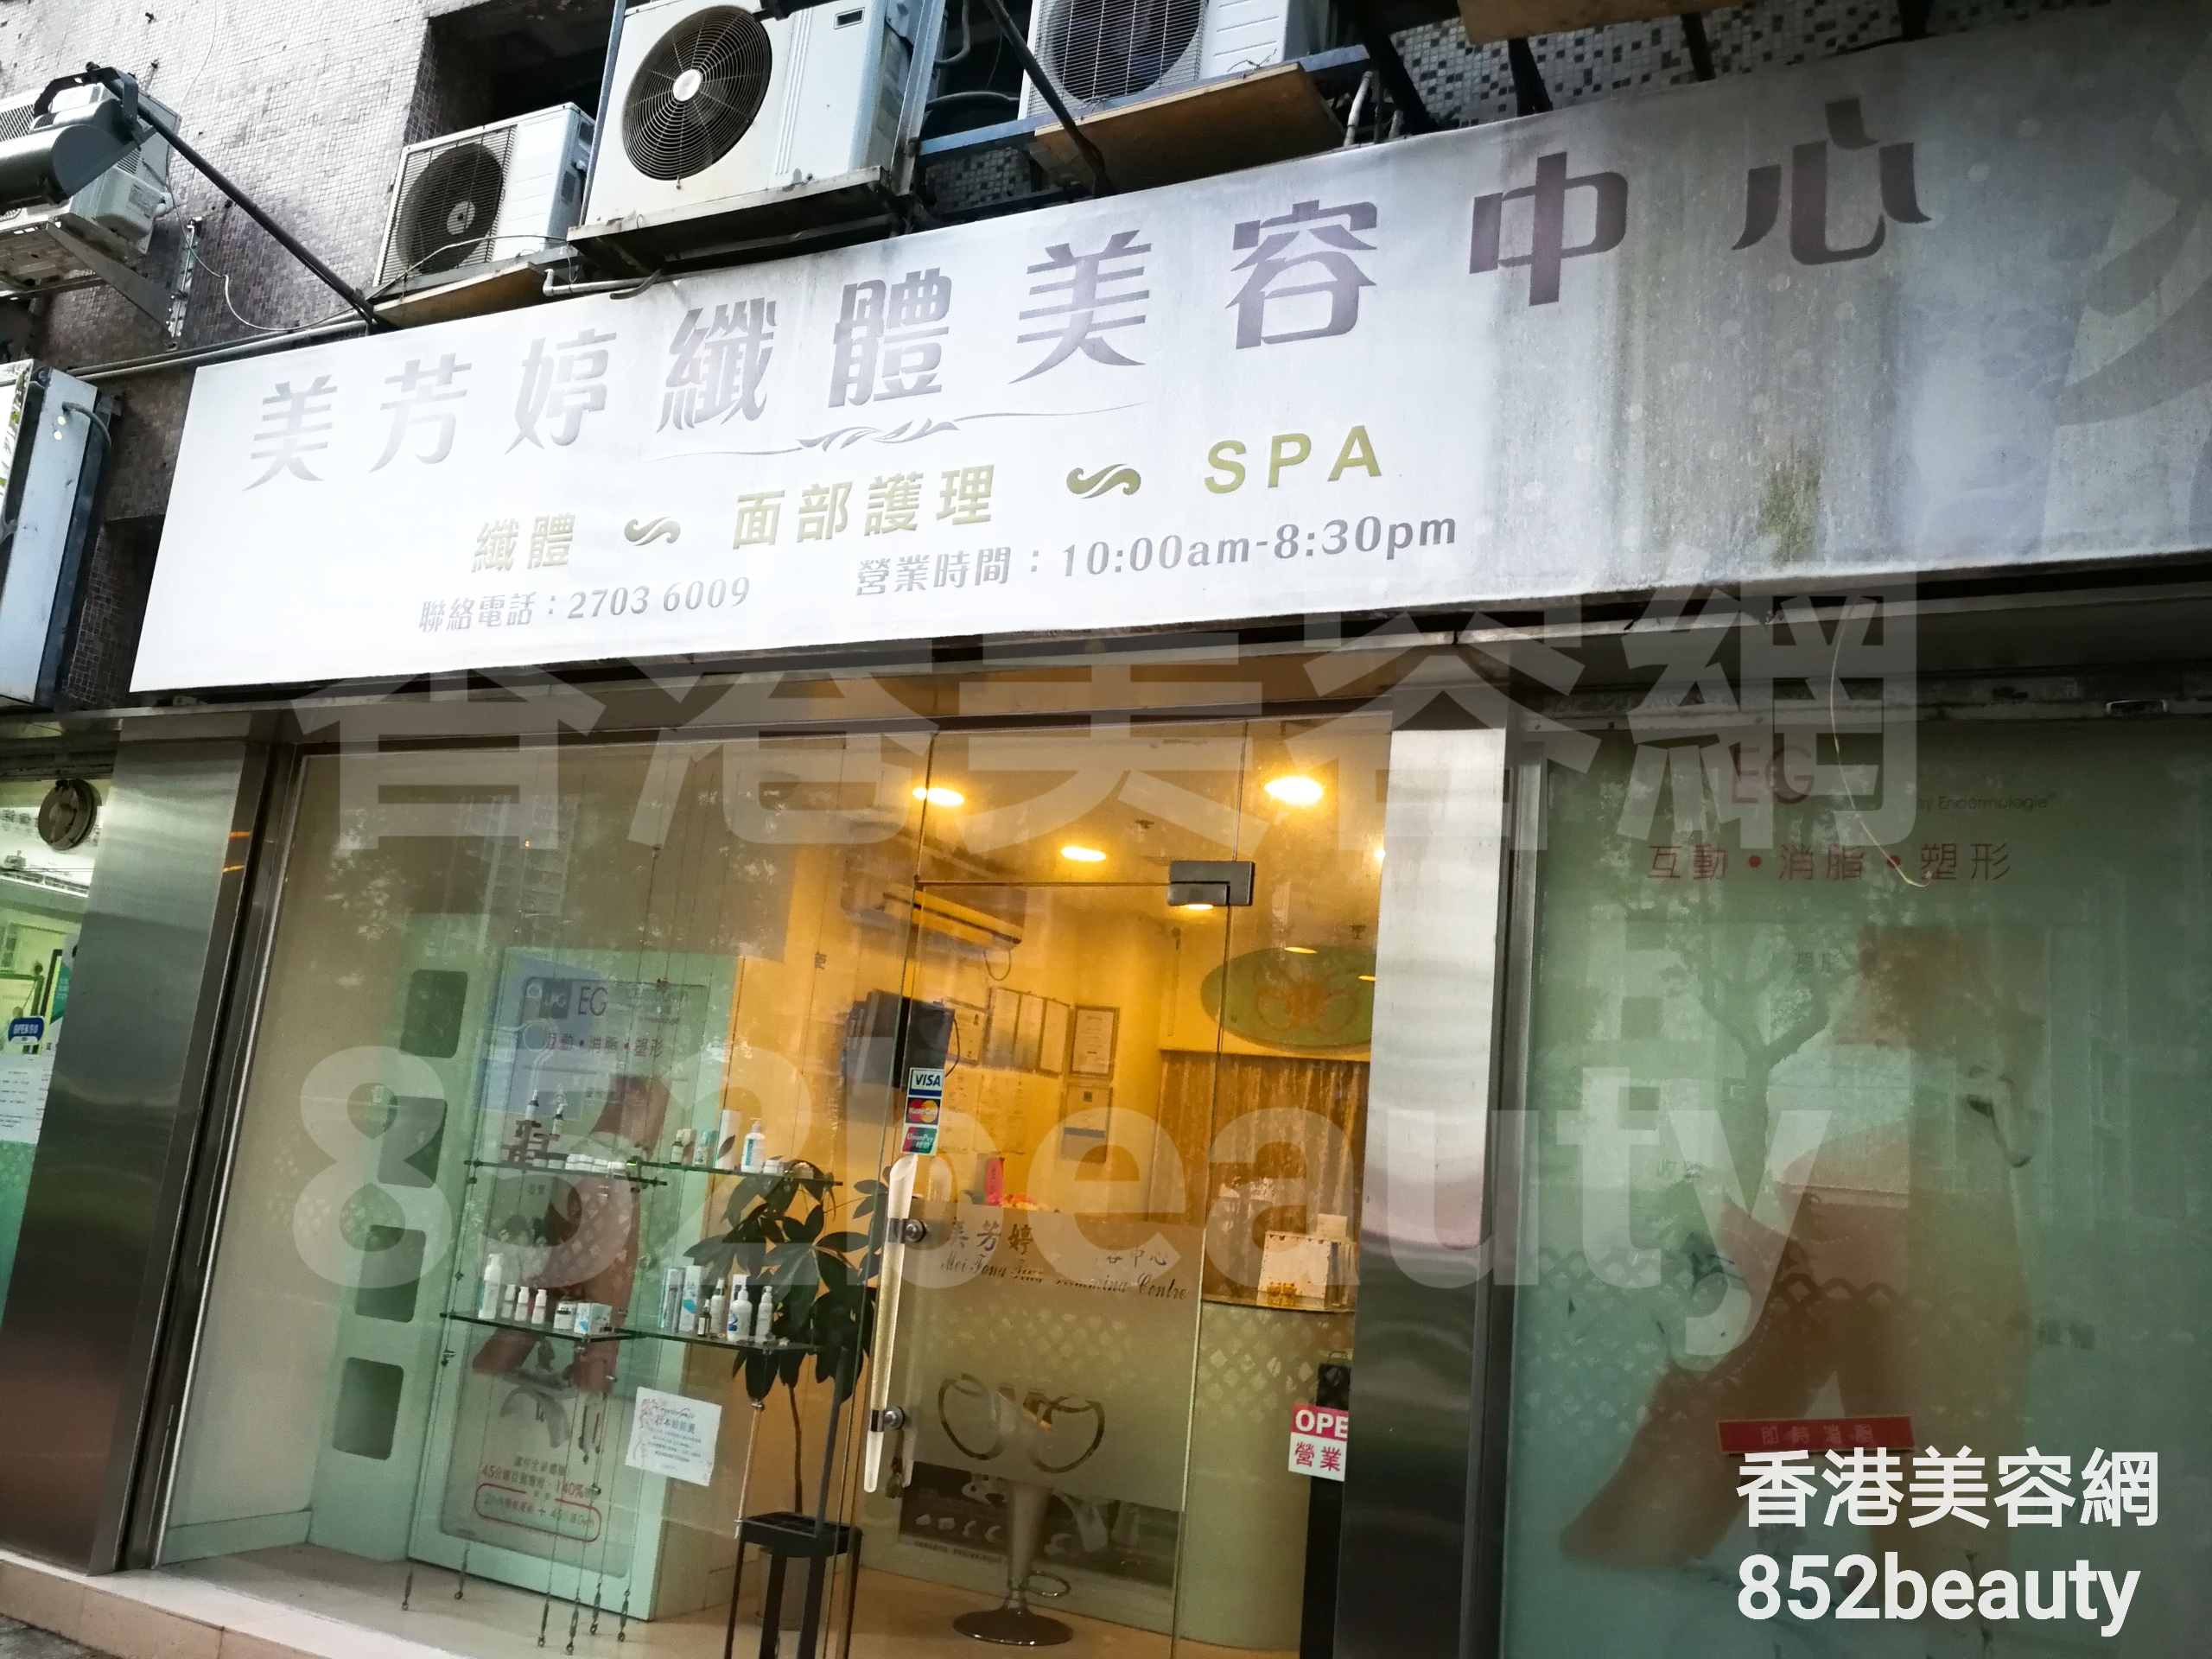 香港美容網 Hong Kong Beauty Salon 美容院 / 美容師: 美芳婷纖體美容中心